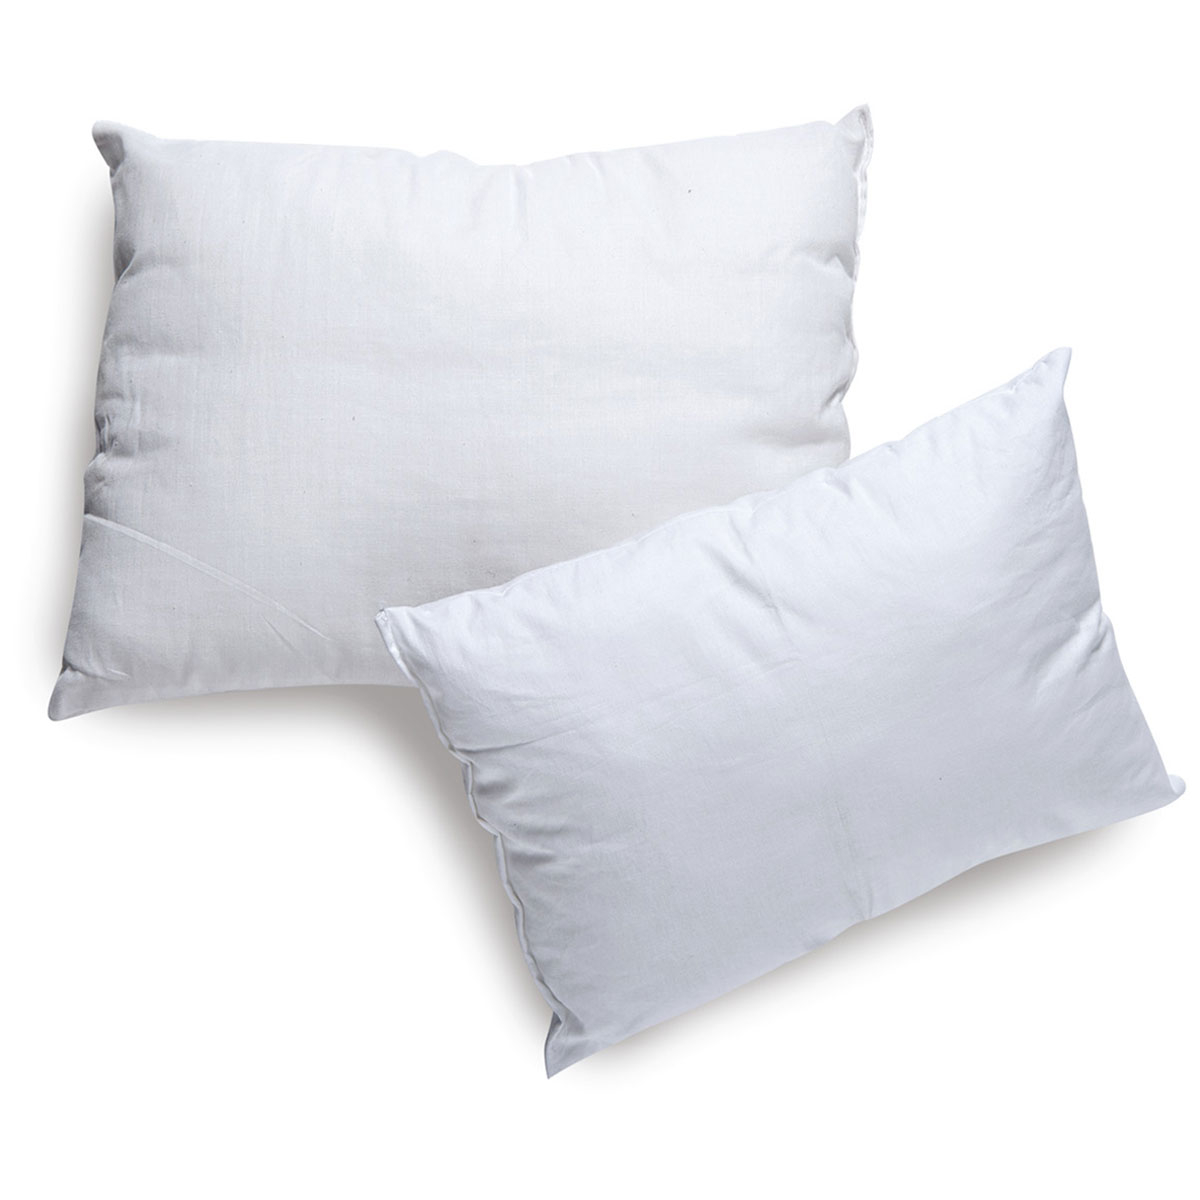 Βρεφικό Μαξιλάρι Ύπνου Μαλακό (30×40) Sb Home Baby Pillow 205246